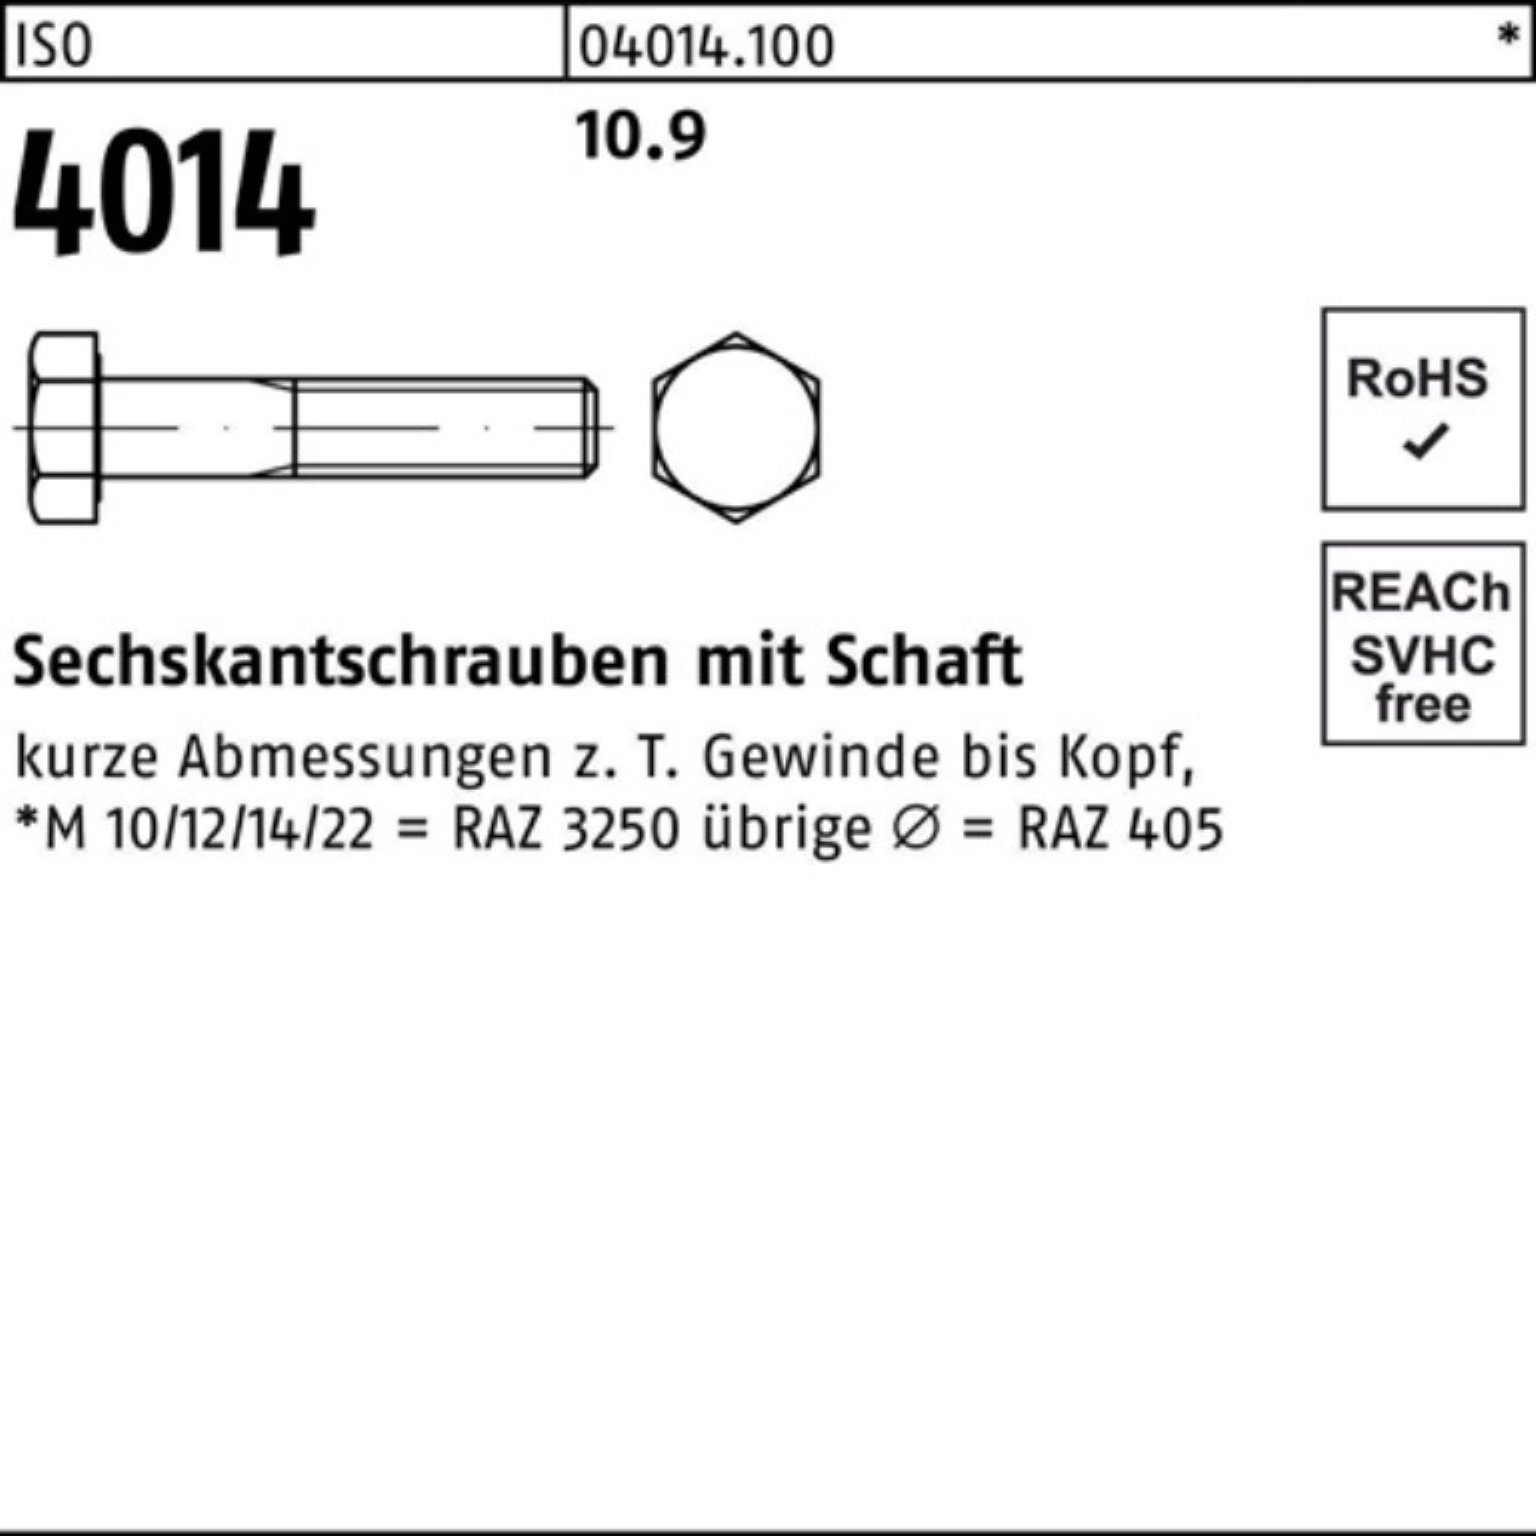 Bufab Sechskantschraube 100er ISO 25 140 4014 I Pack 10.9 M16x Sechskantschraube Stück Schaft